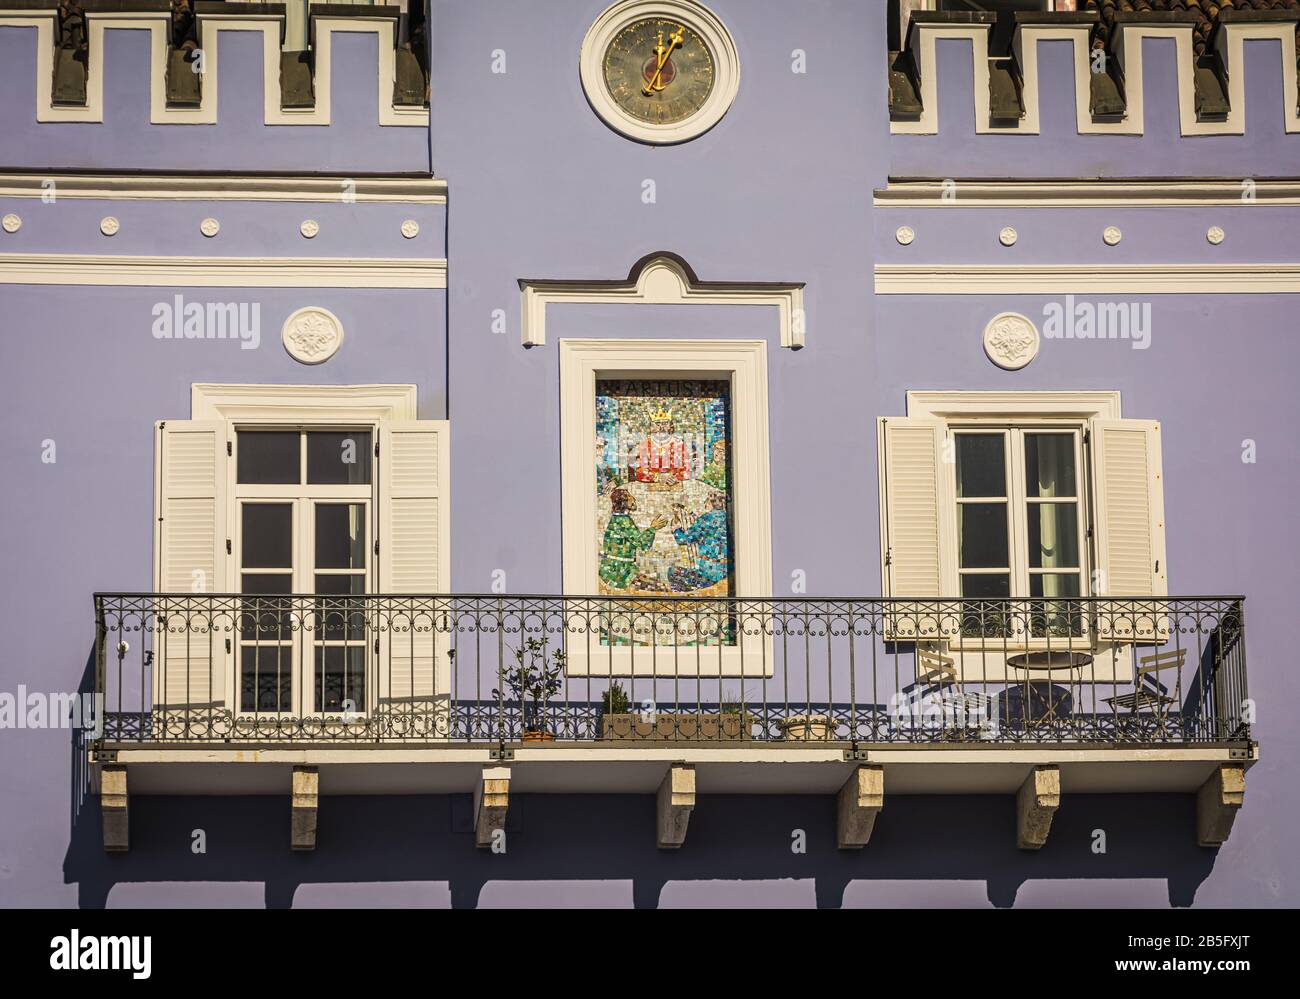 Charakteristisches Gebäude mit erstaunlichen Details im historischen Zentrum der Stadt bolzano in Südtirol. Trentino Alto Adige, Norditalien, Europa Stockfoto